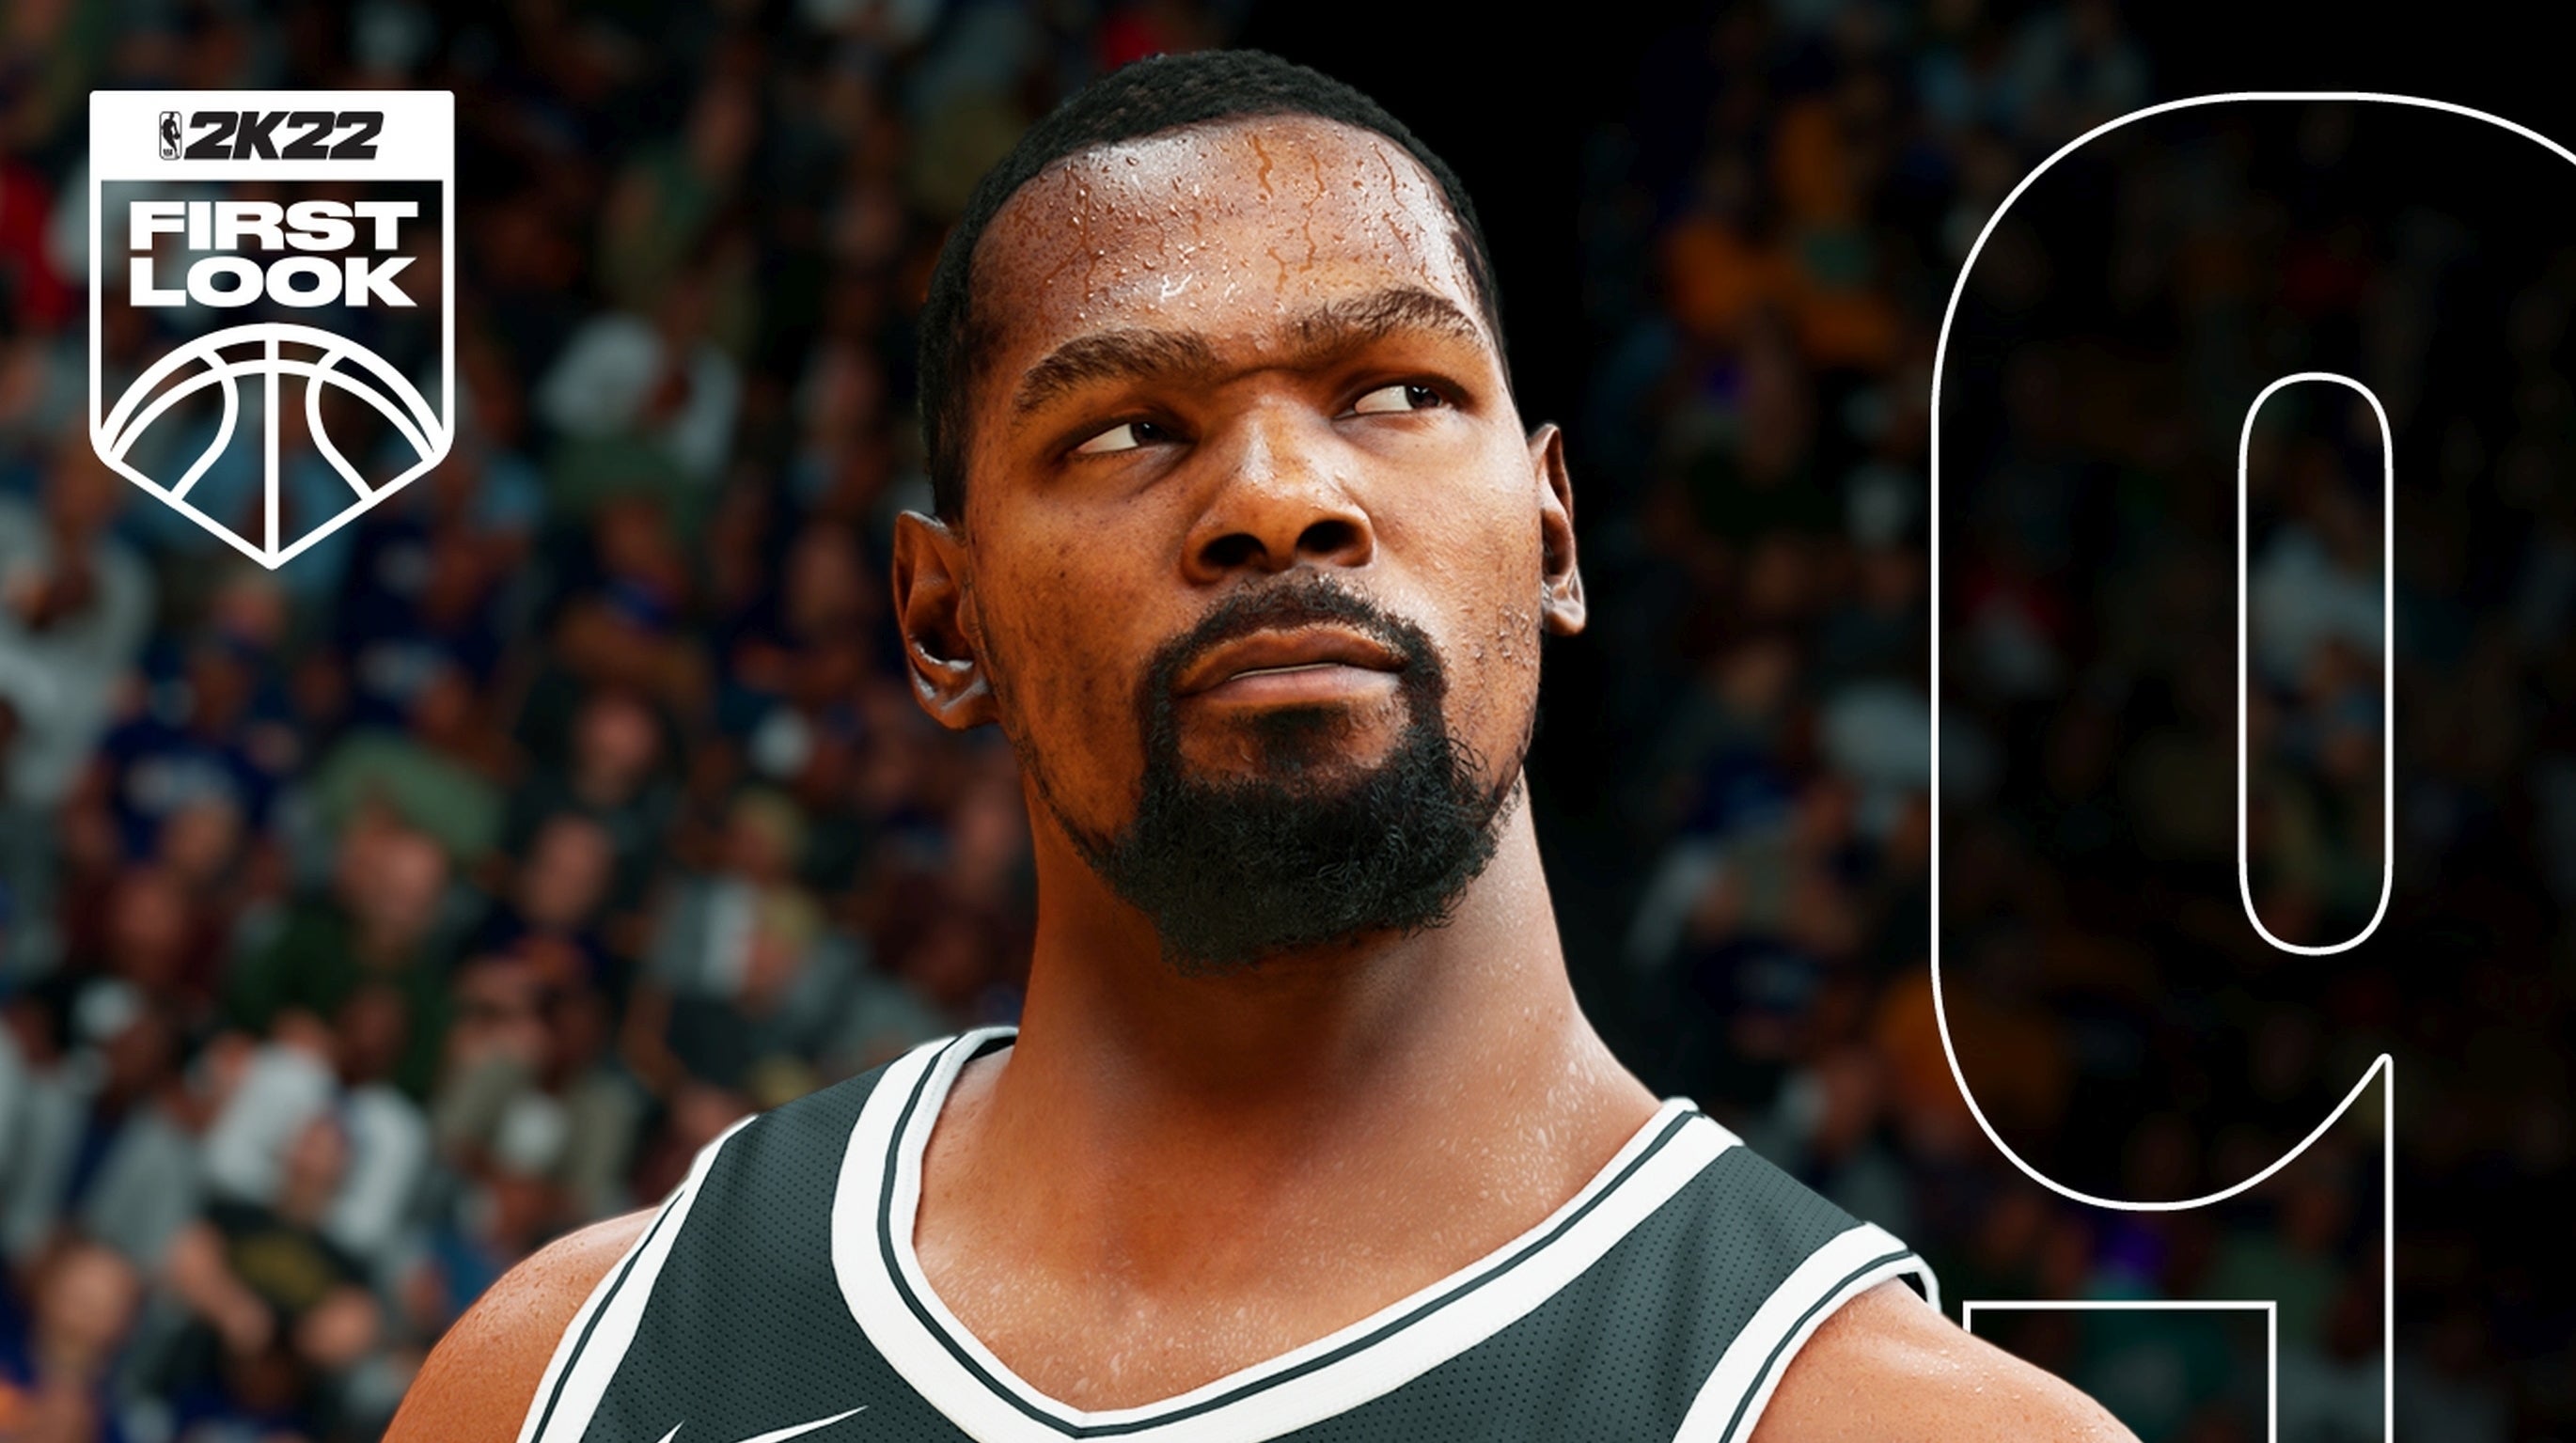 Bilder zu Herrscht "King James" noch? NBA 2K22 zeigt seine besten Spieler